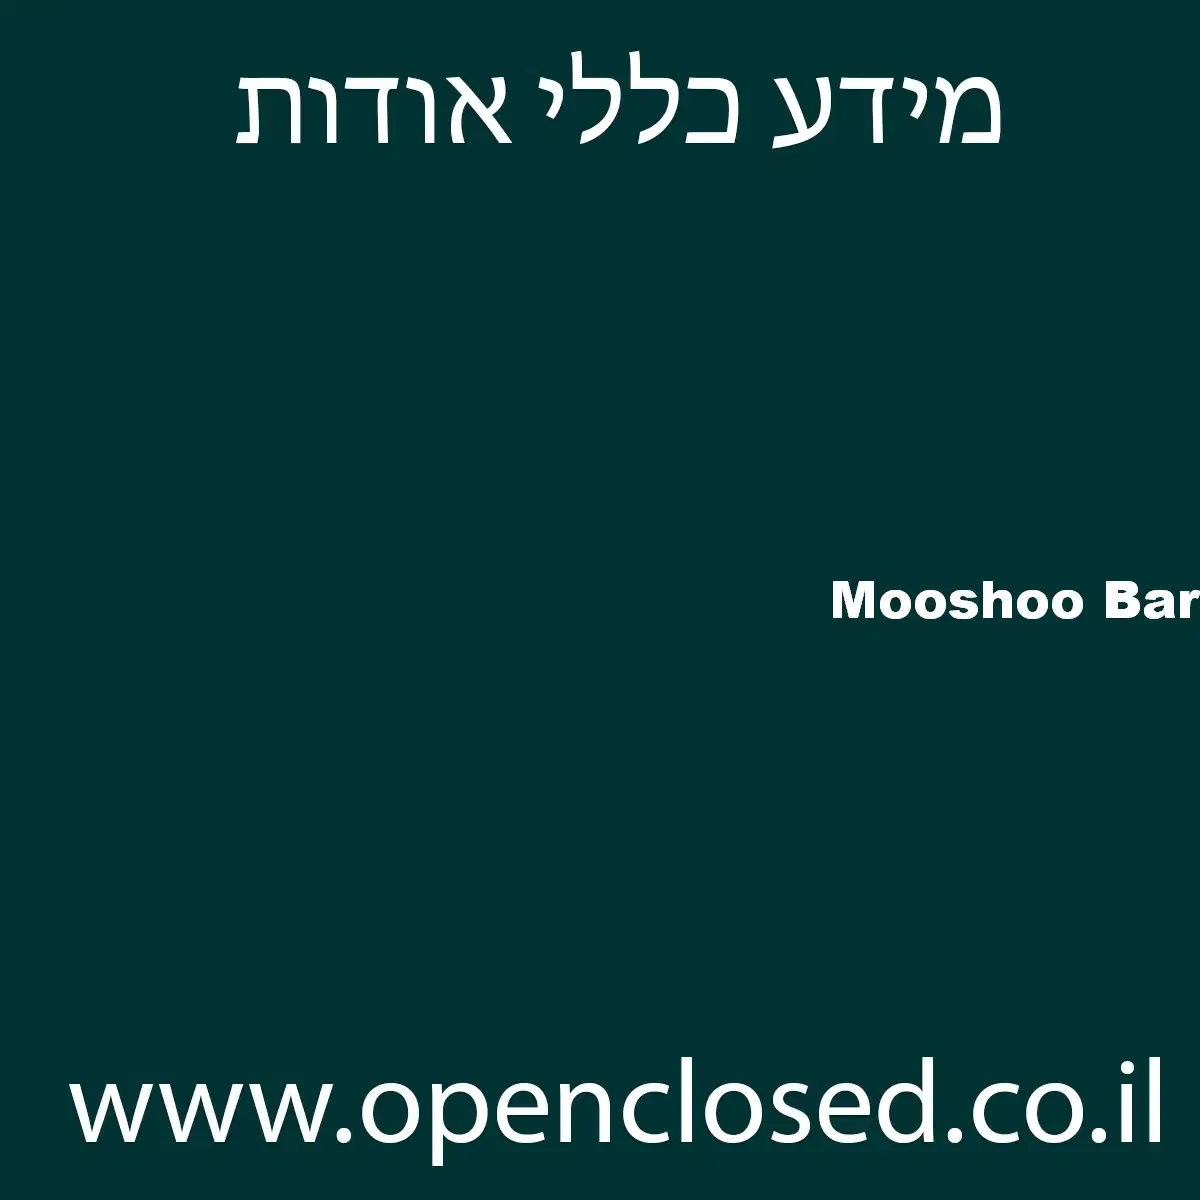 Mooshoo Bar